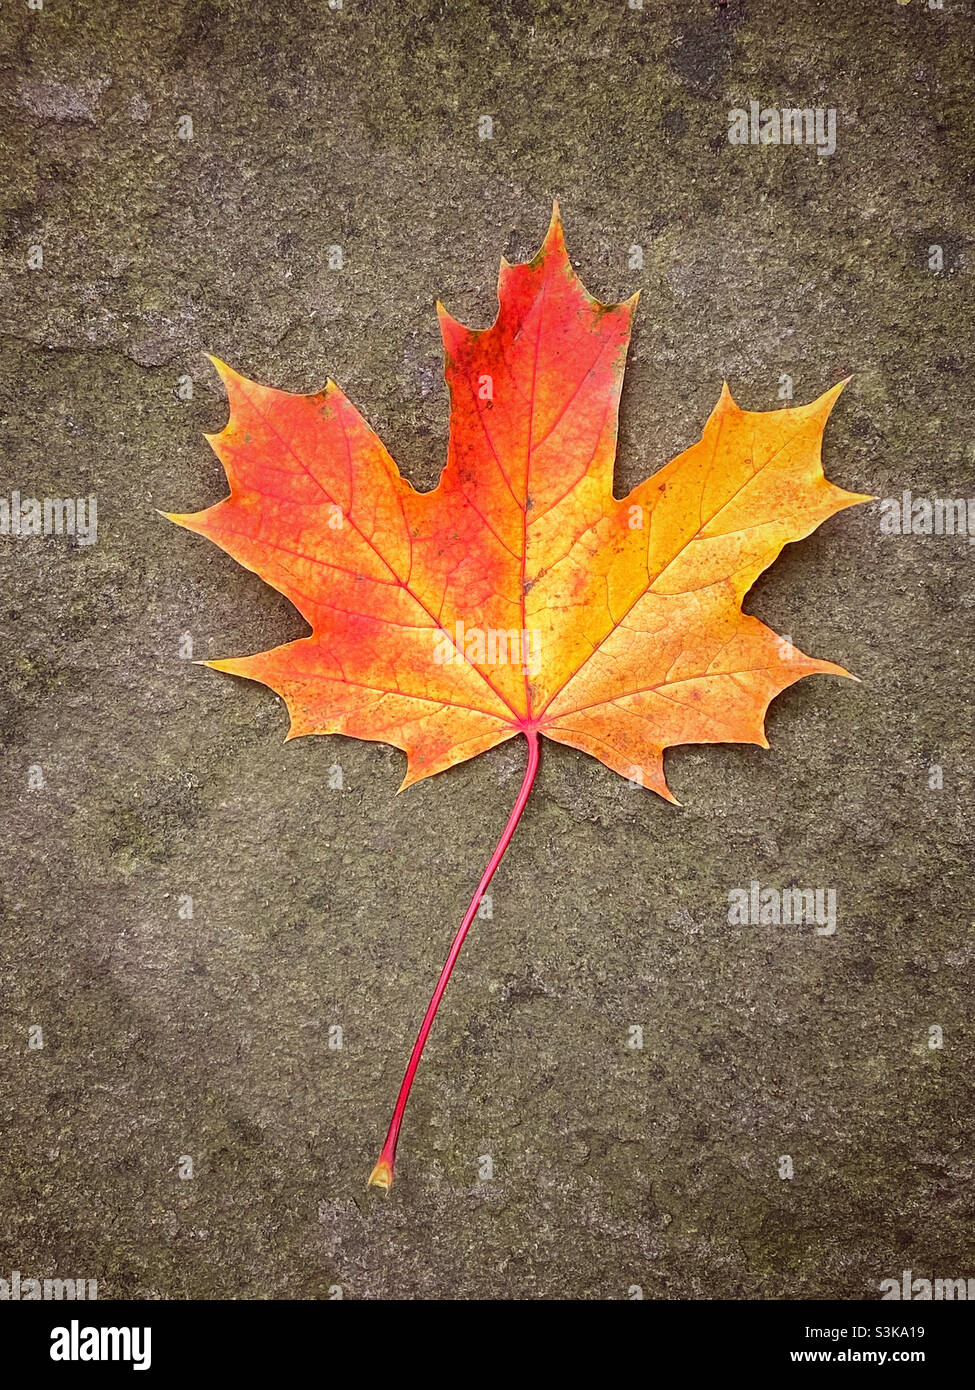 Un bon exemple de feuille d'érable.C’est l’automne, alors les feuilles changent de couleur et perdent leur chlorophylle.Une image d'automne classique.©️ COLIN HOSKINS. Banque D'Images